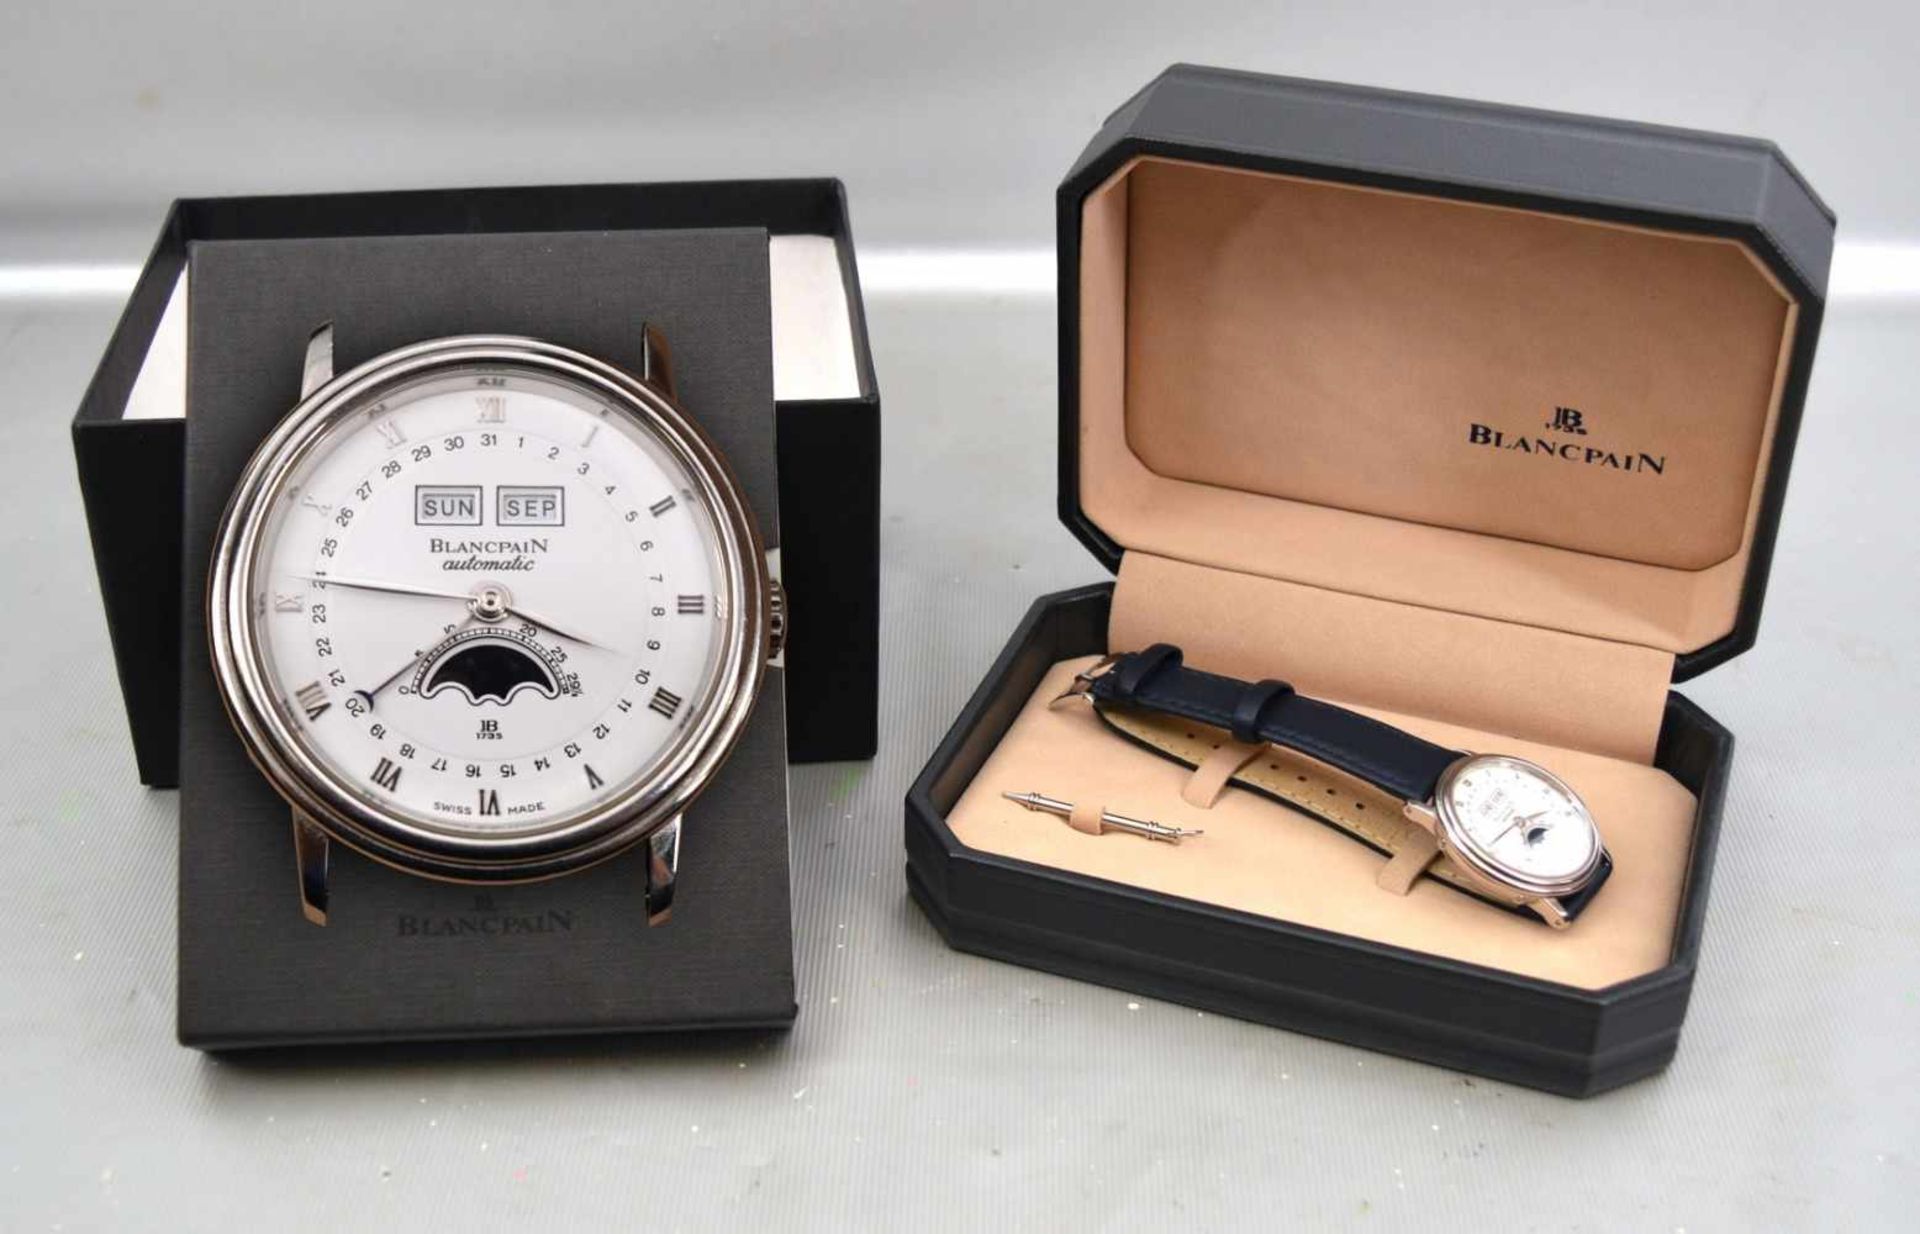 Armbanduhr "Villeret" Blancpain Stahlgehäuse, Unisex, Automatik, weißes Zifferblatt, mit Mondphase